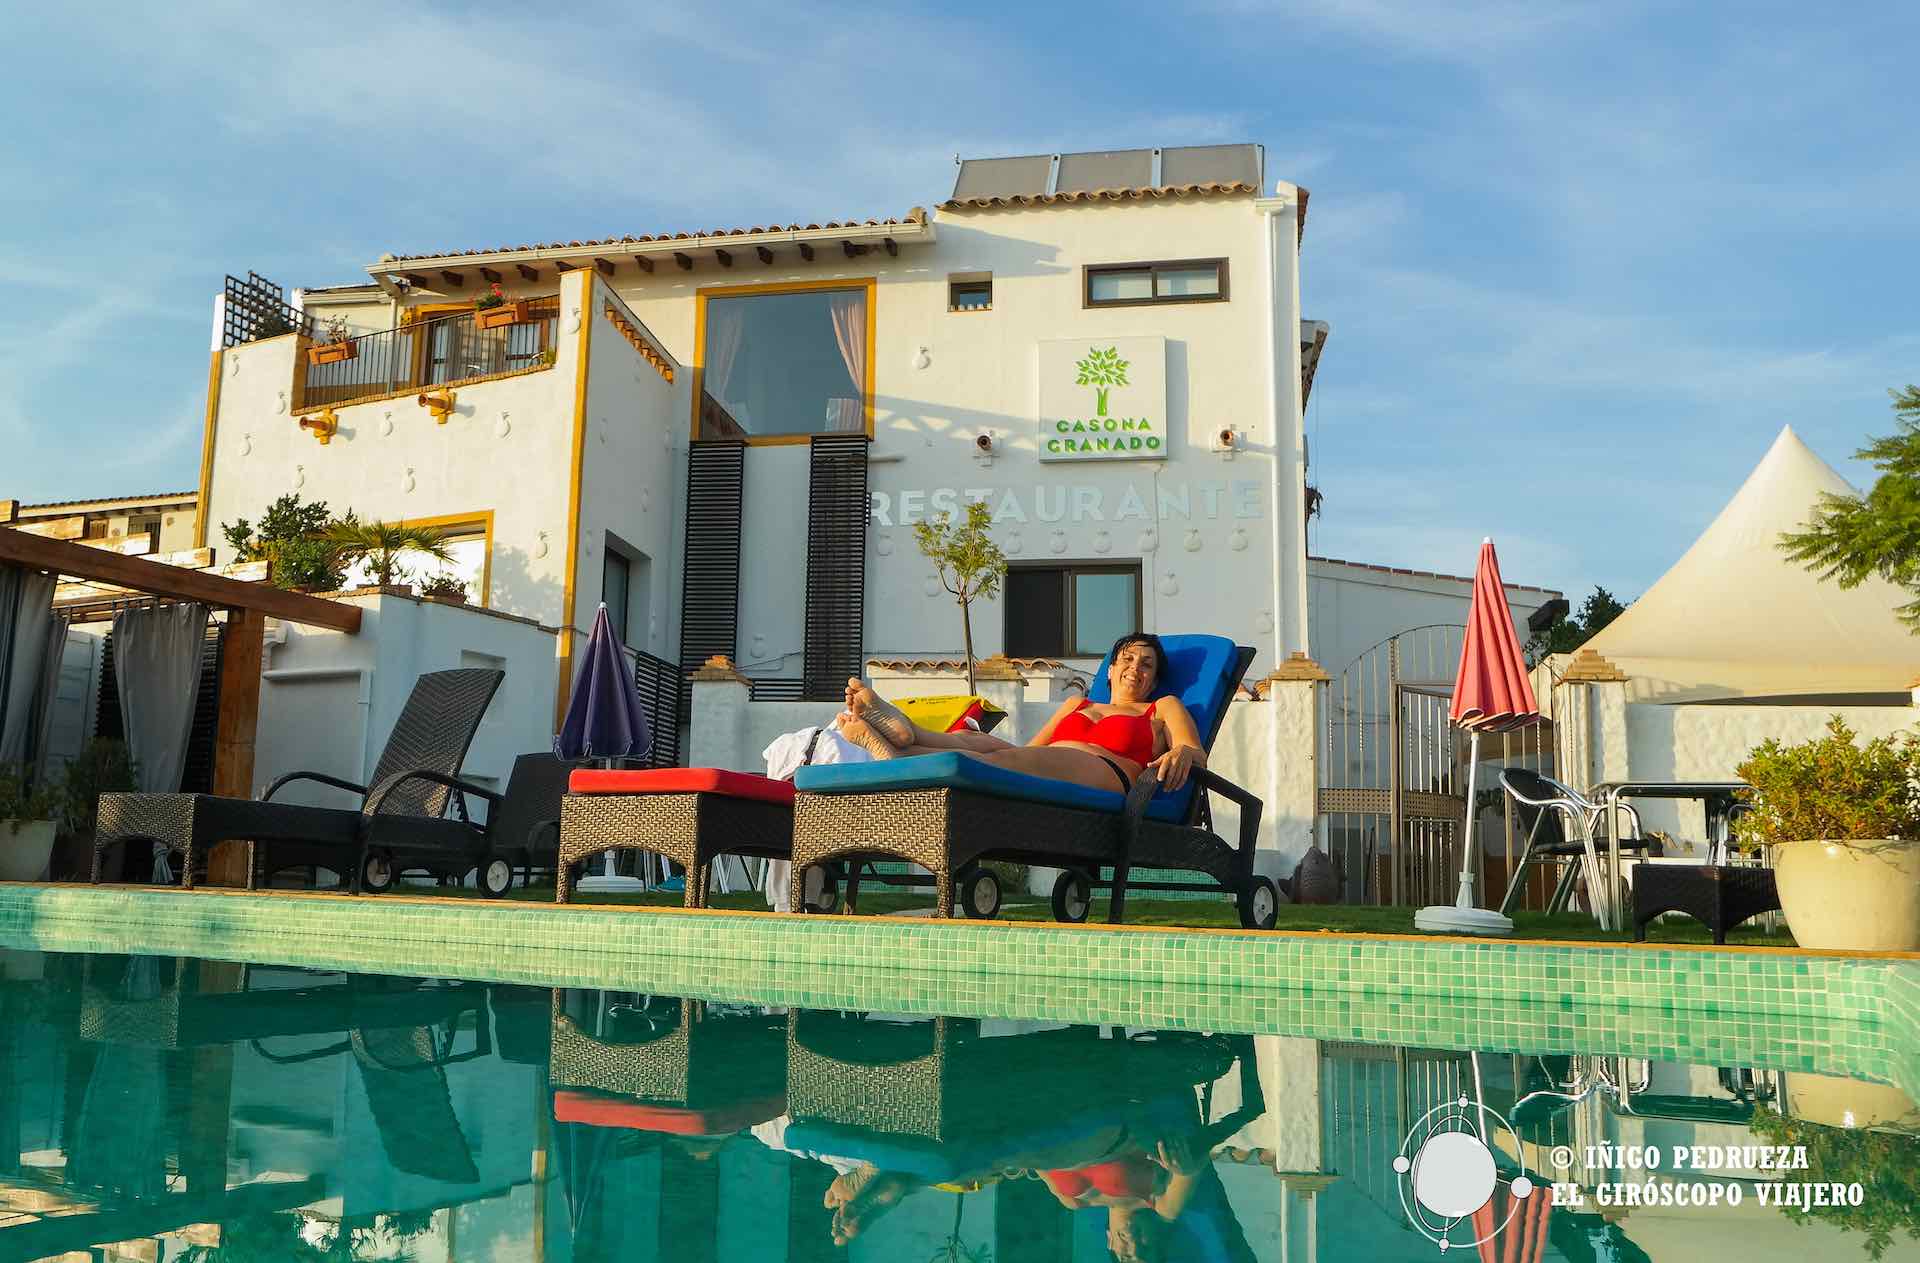 Hotel boutique en Almería: Clayton Morley y la Casona Granado, poblando y desarrollando